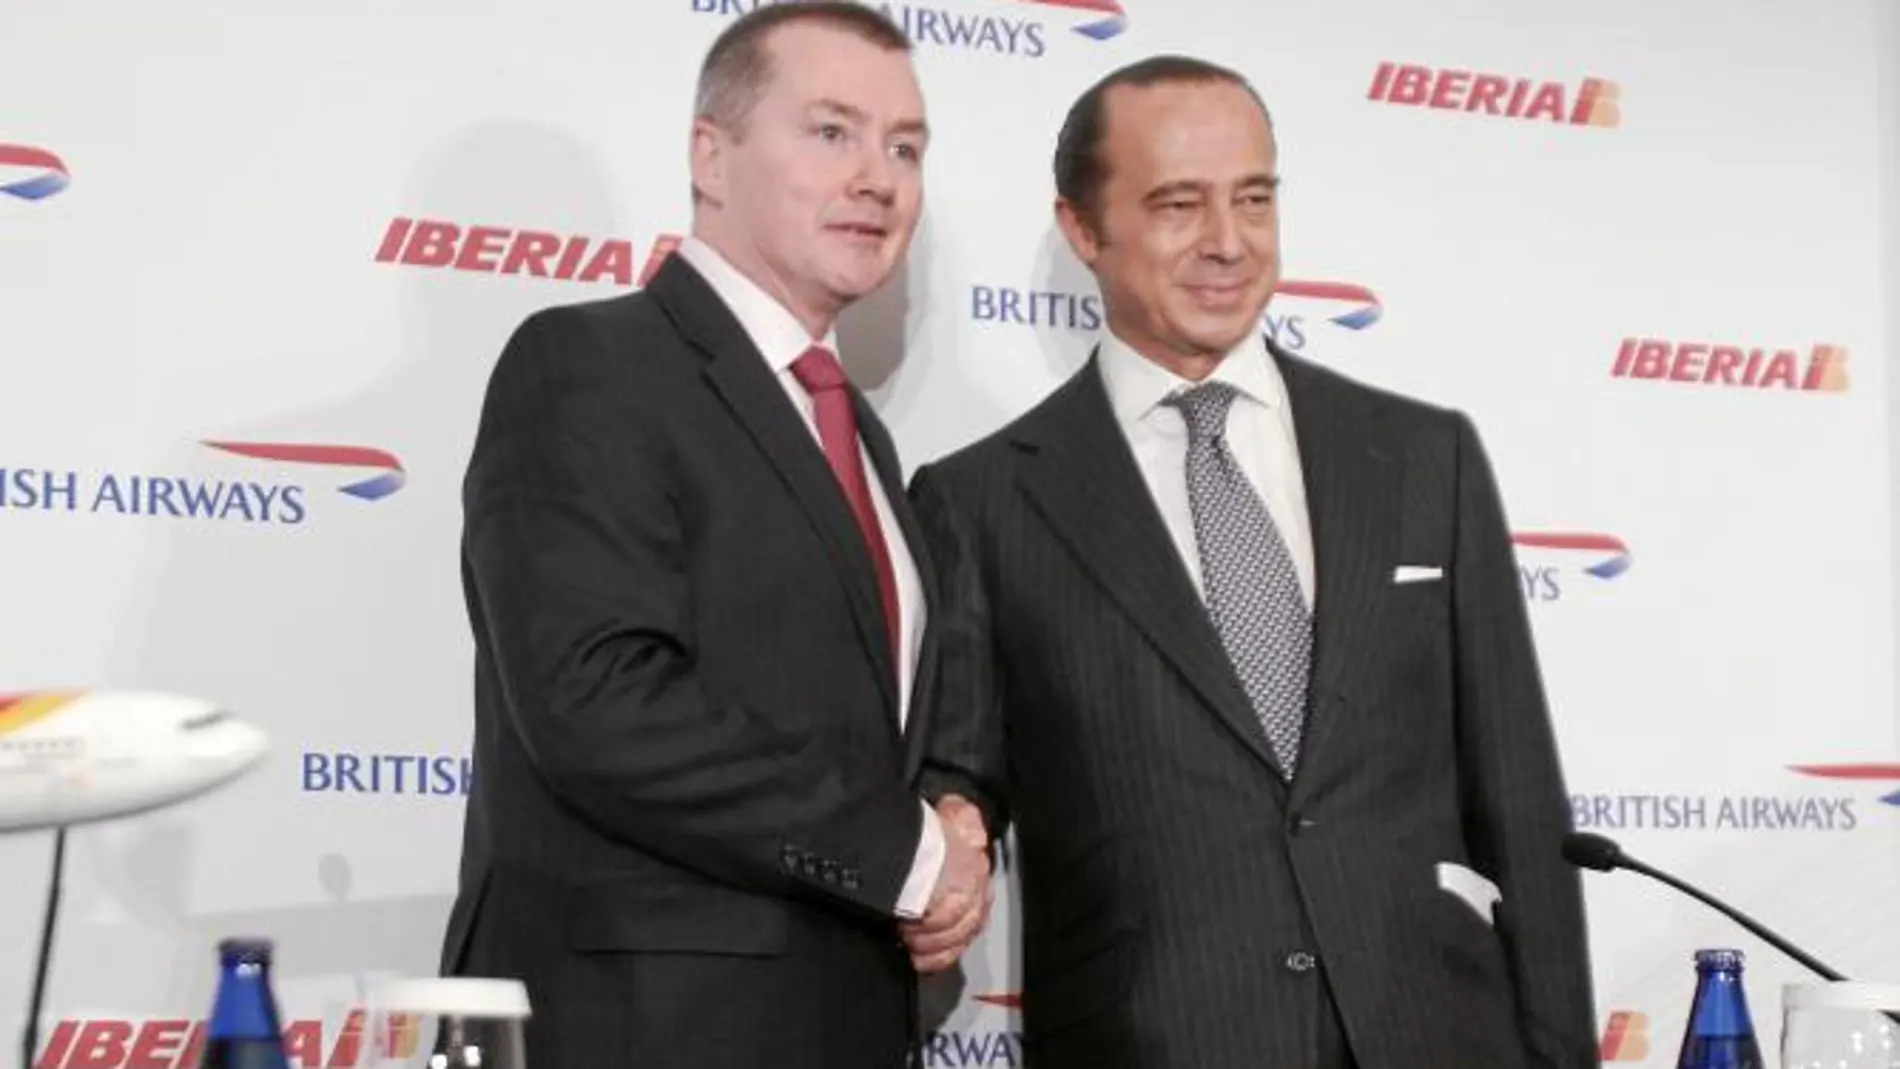 El presidente de Iberia, Antonio Vázquez, y el consejero delegado de British Airways, sellaron la fusión de ambas compañías el 30 de noviembre de 2010